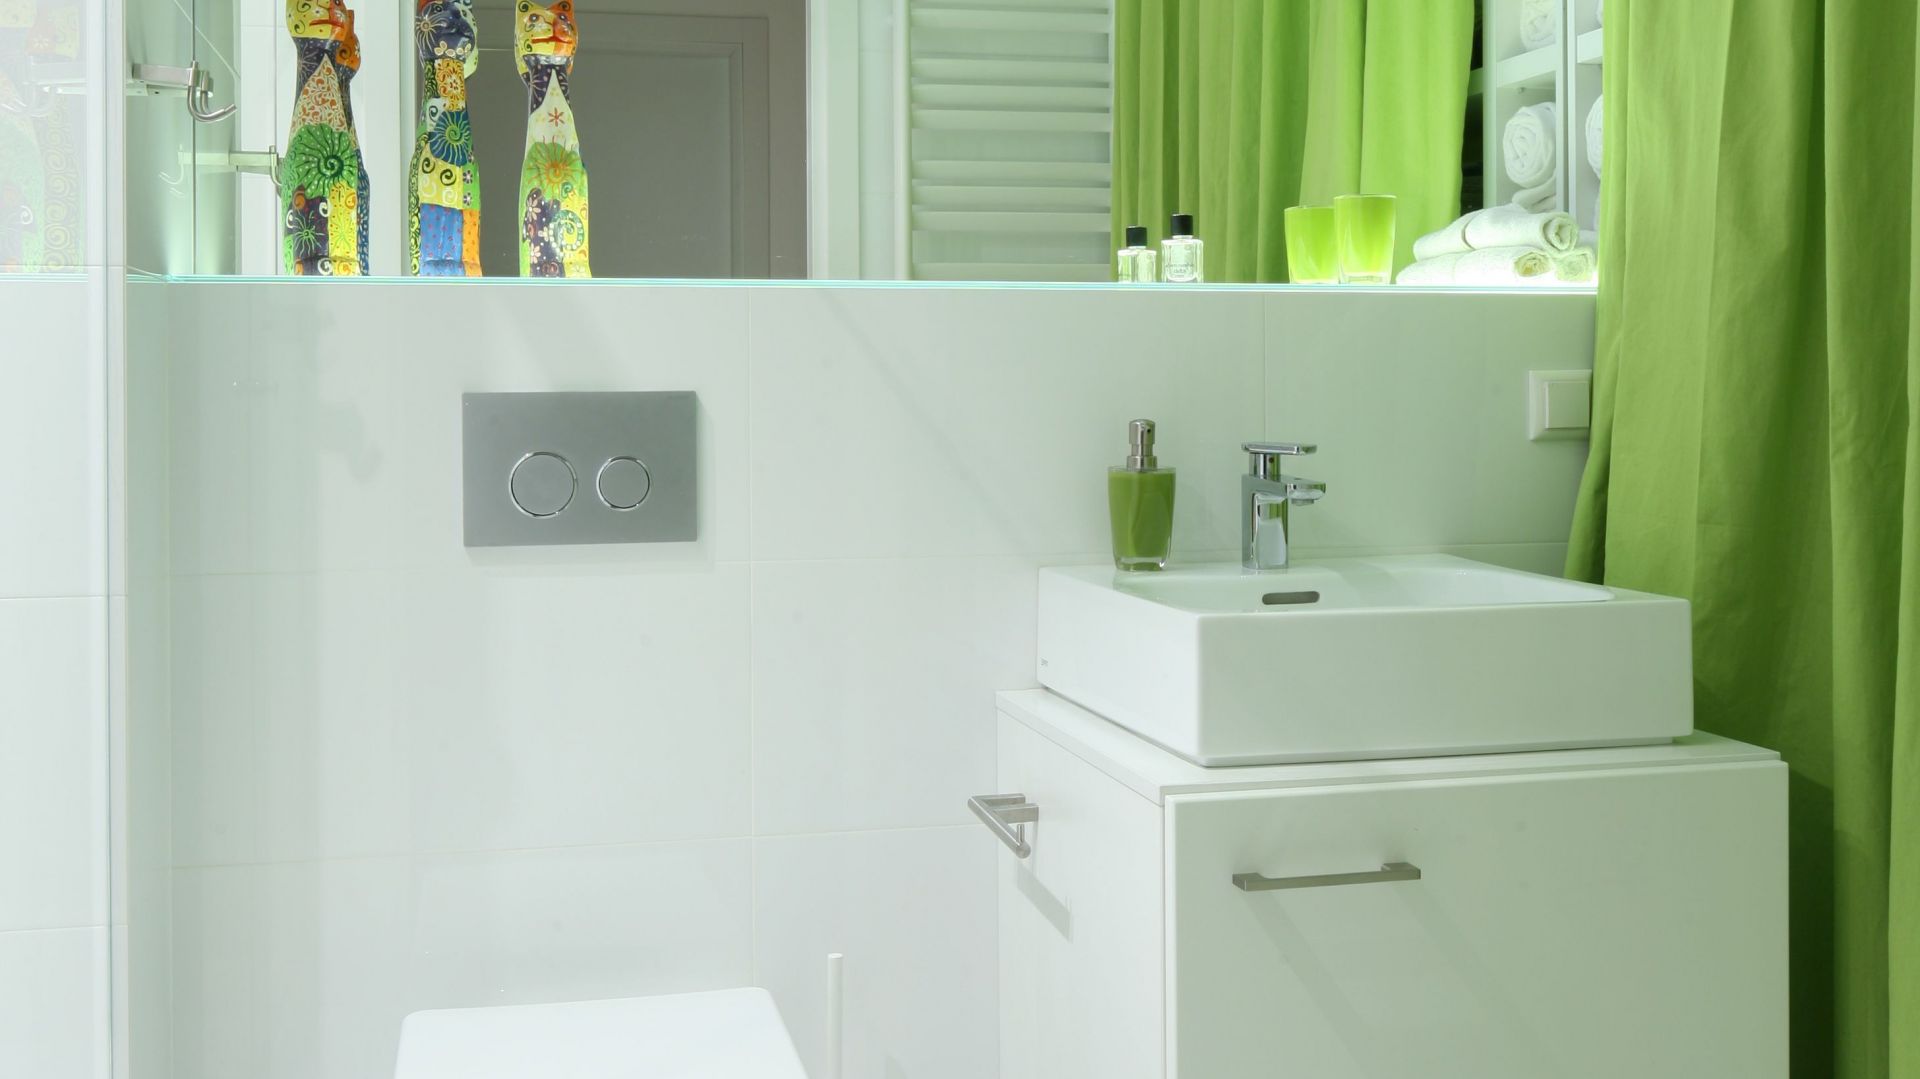 Optymistyczna łazienka dla rodziny - ożywiona zielenią